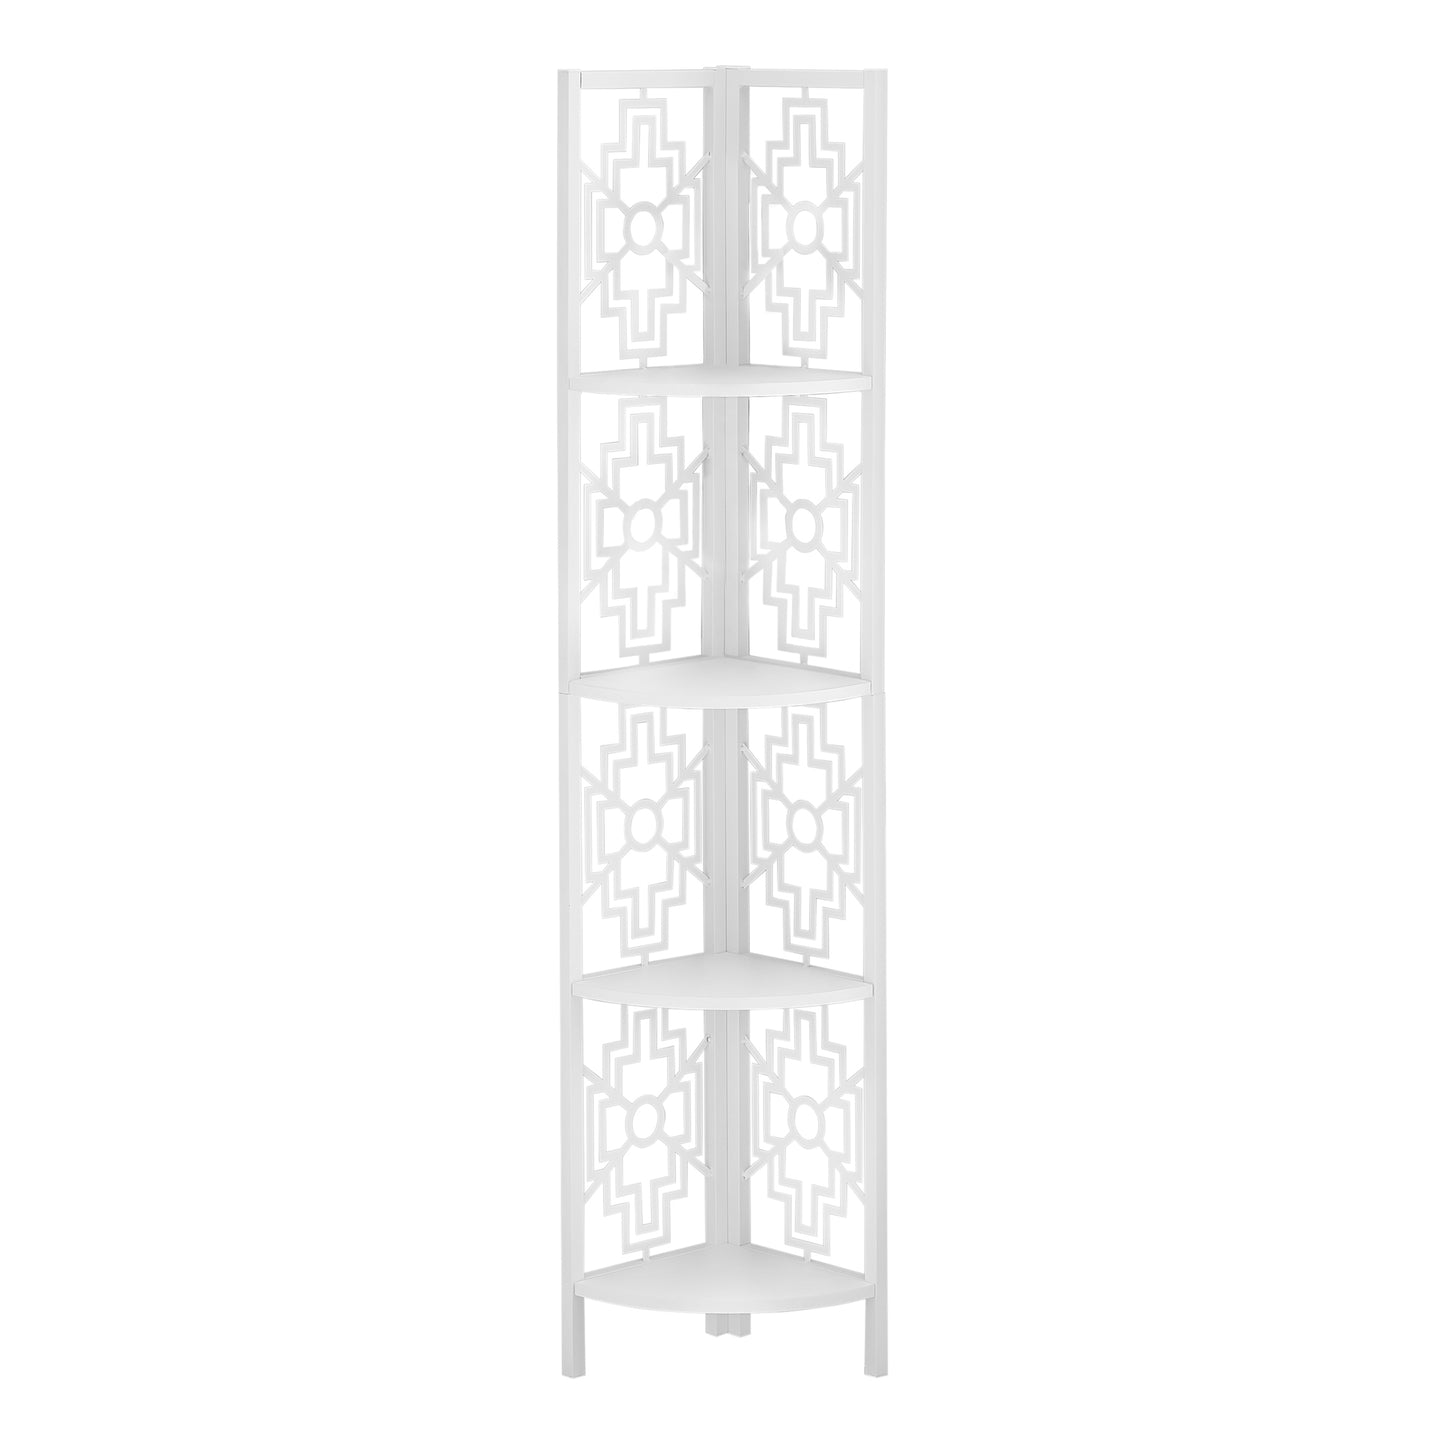 15.5" X 11" X 61.5" White Metal Corner Etagere Bookcase